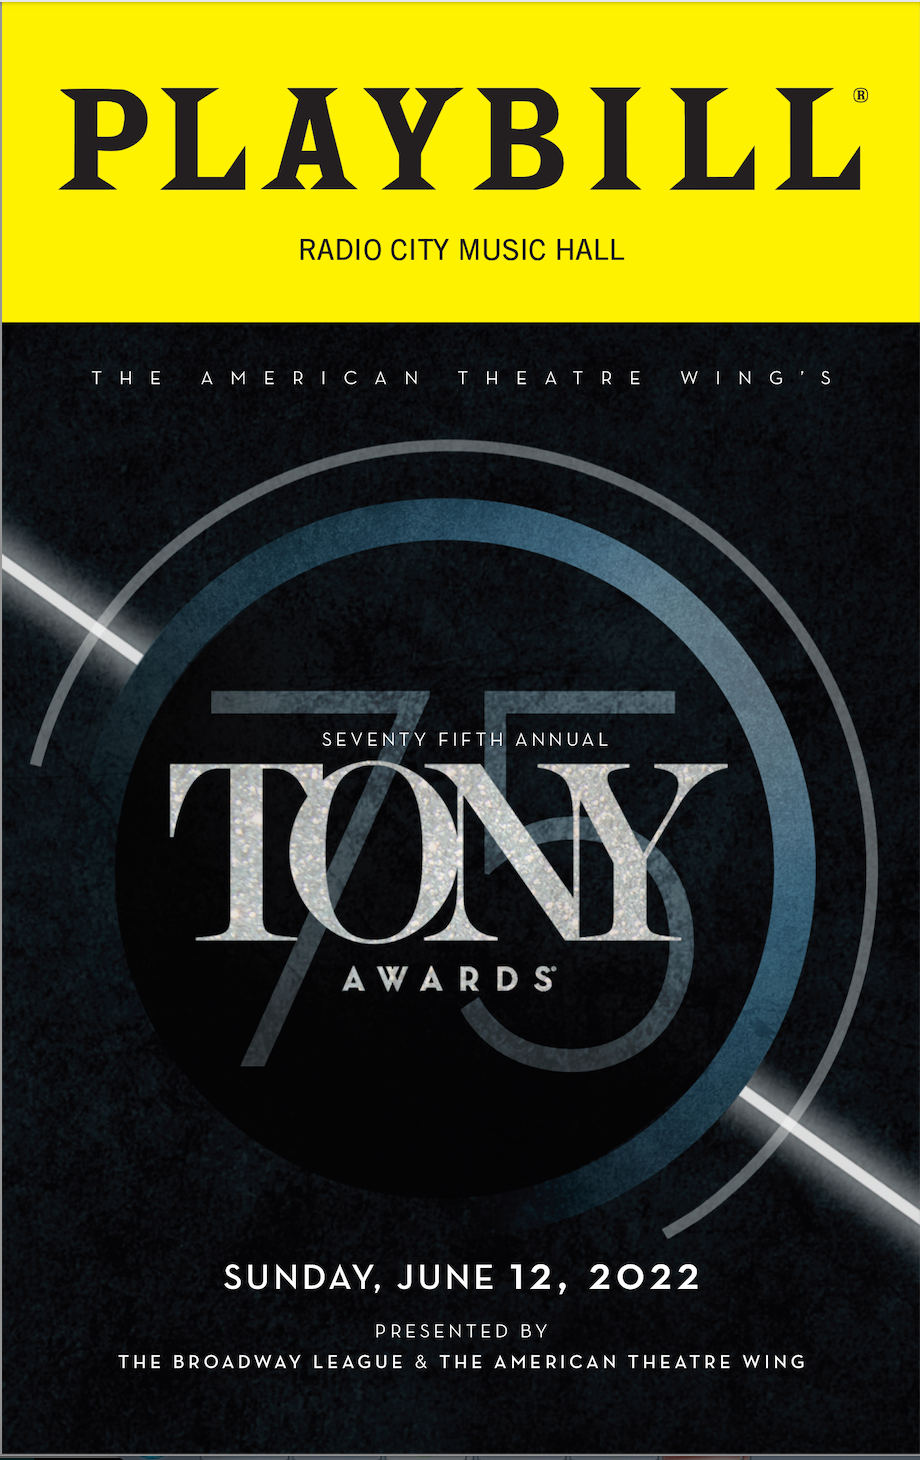 The 2022 Tony Awards Playbill